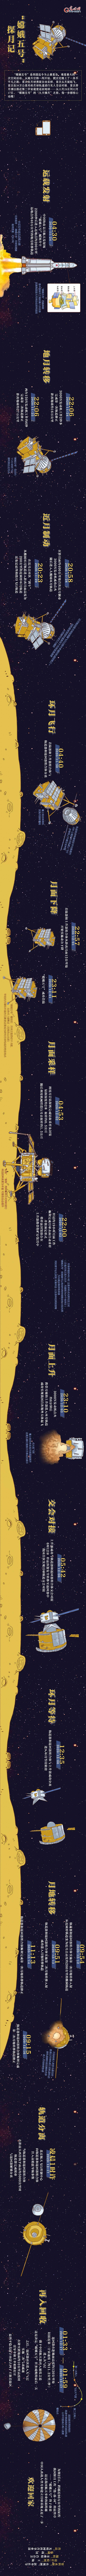 蔡琳|欢迎回家！长图速览“嫦娥五号”探月记